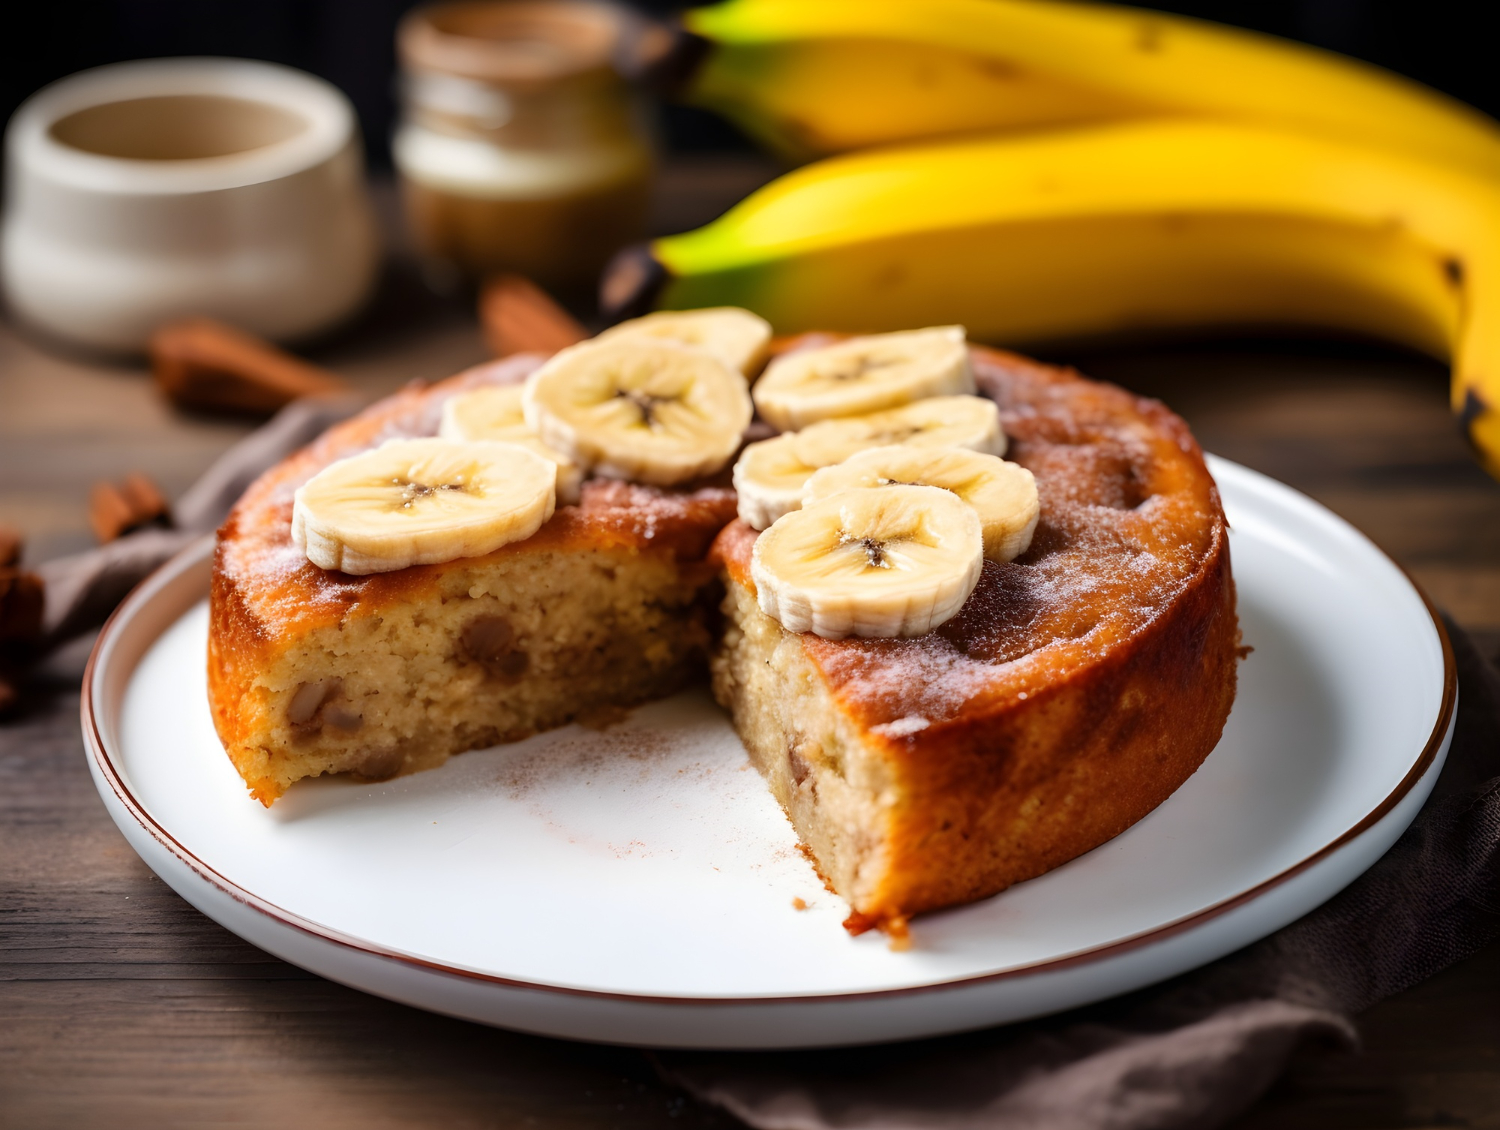 Receita prática de bolo de banana sem açúcar, farinha ou leite 